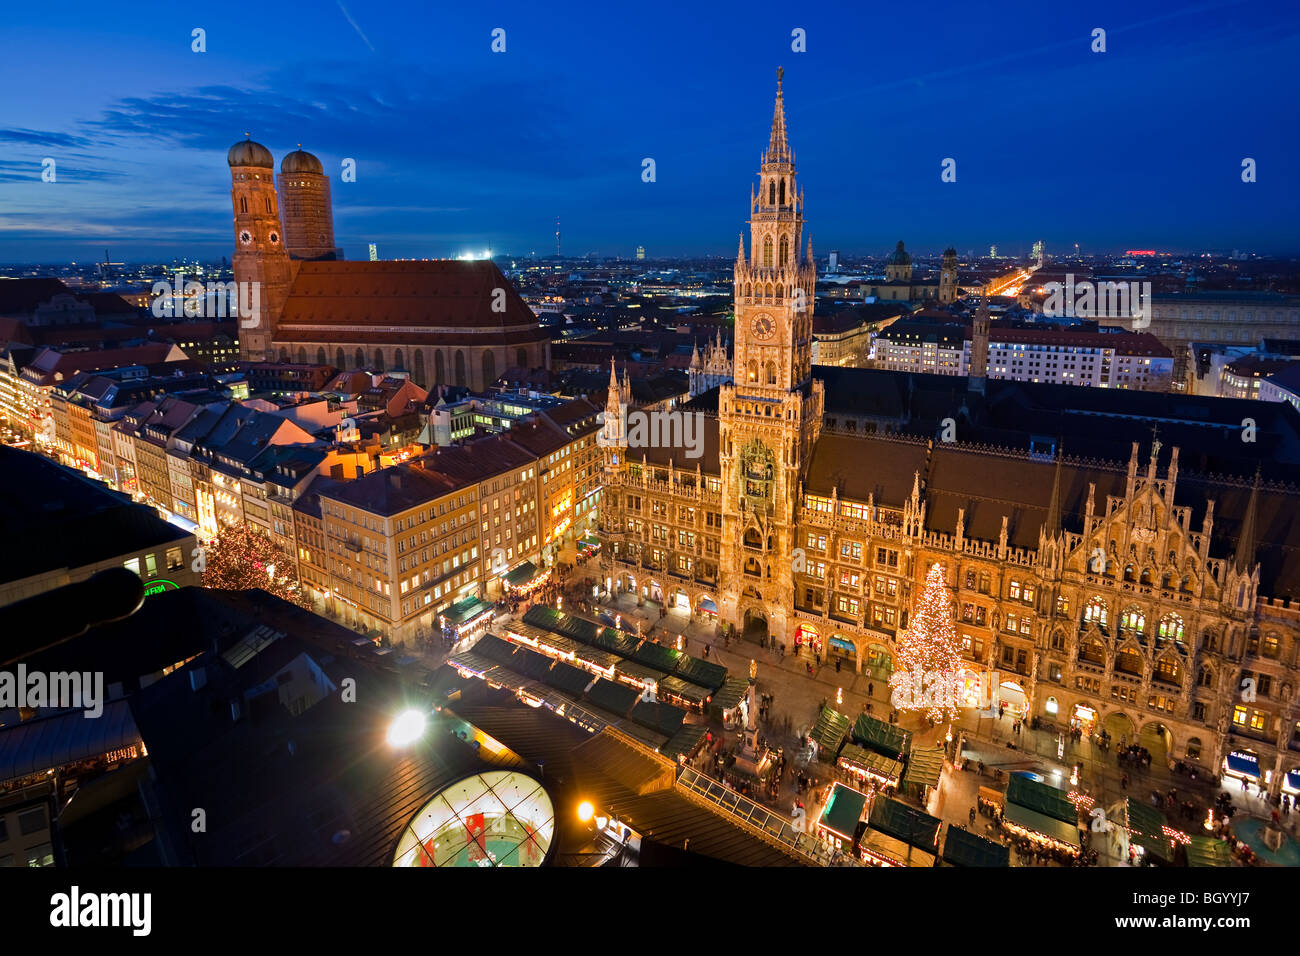 Luftbild von der Christkindlmarkt (Weihnachtsmarkt) in den Marienplatz außerhalb der Neues Rathaus (neue Rathaus) mit der Fr Stockfoto